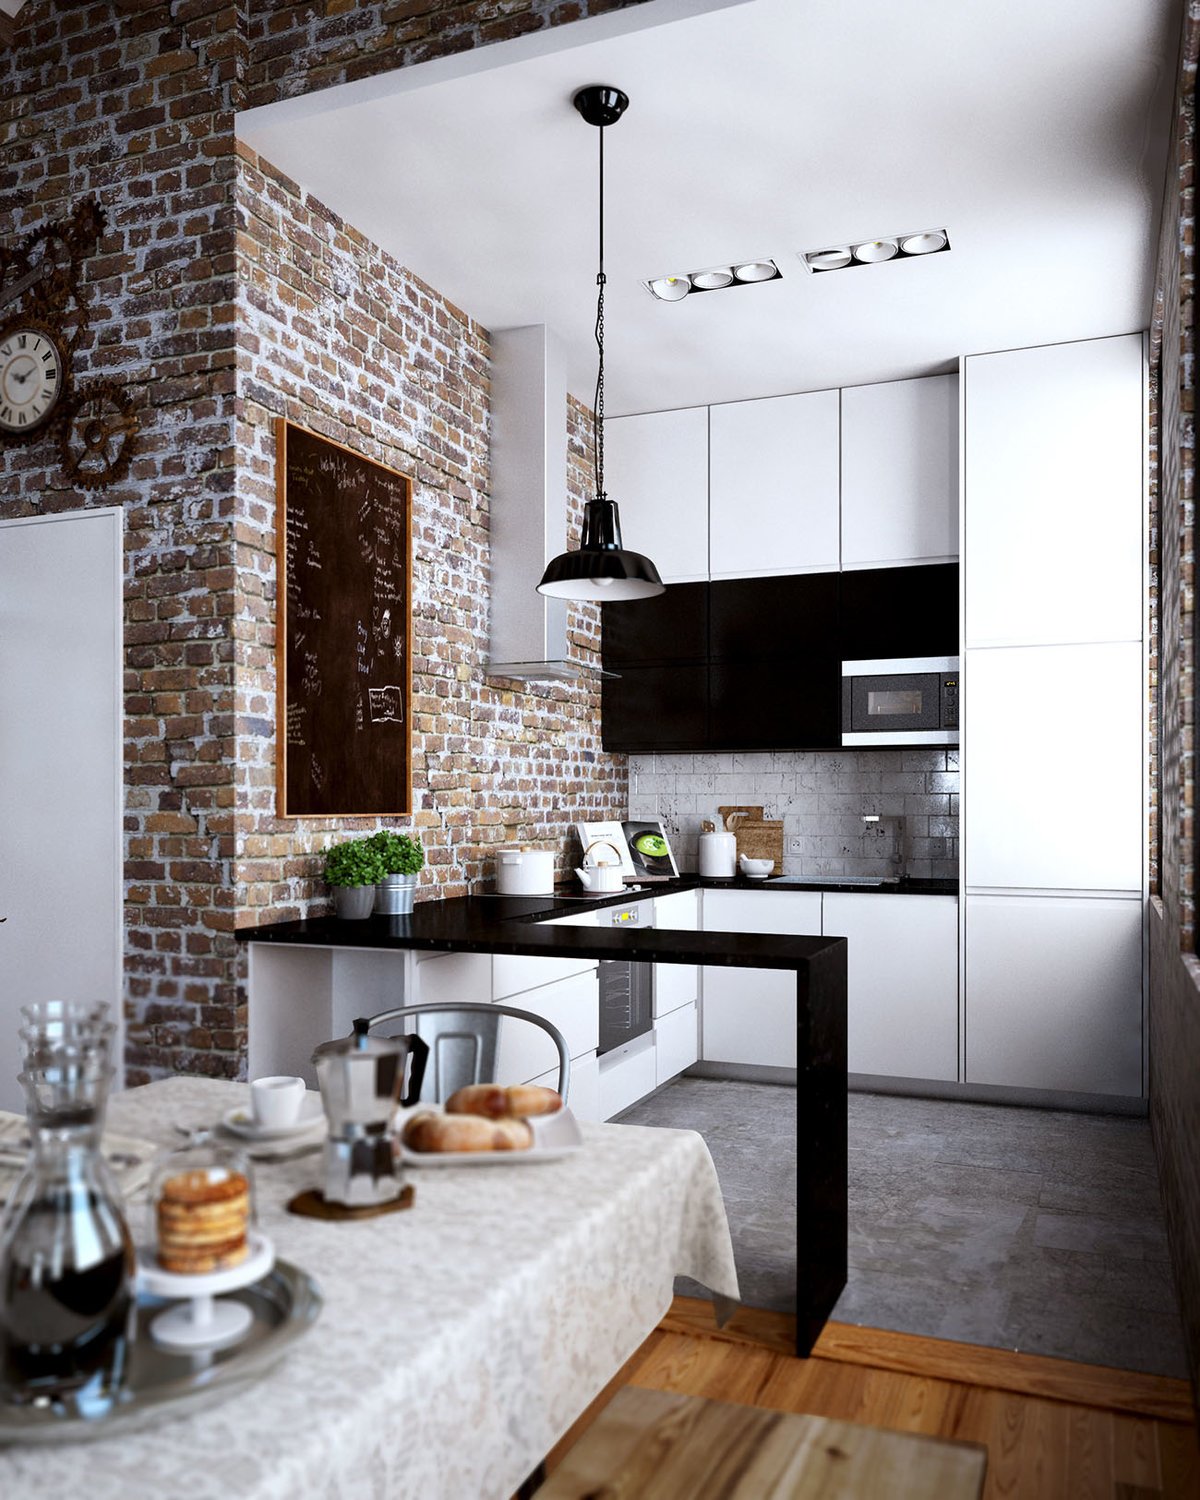 Кирпичная стена на кухне: отделка декоративным кирпичом кухонного интерьера